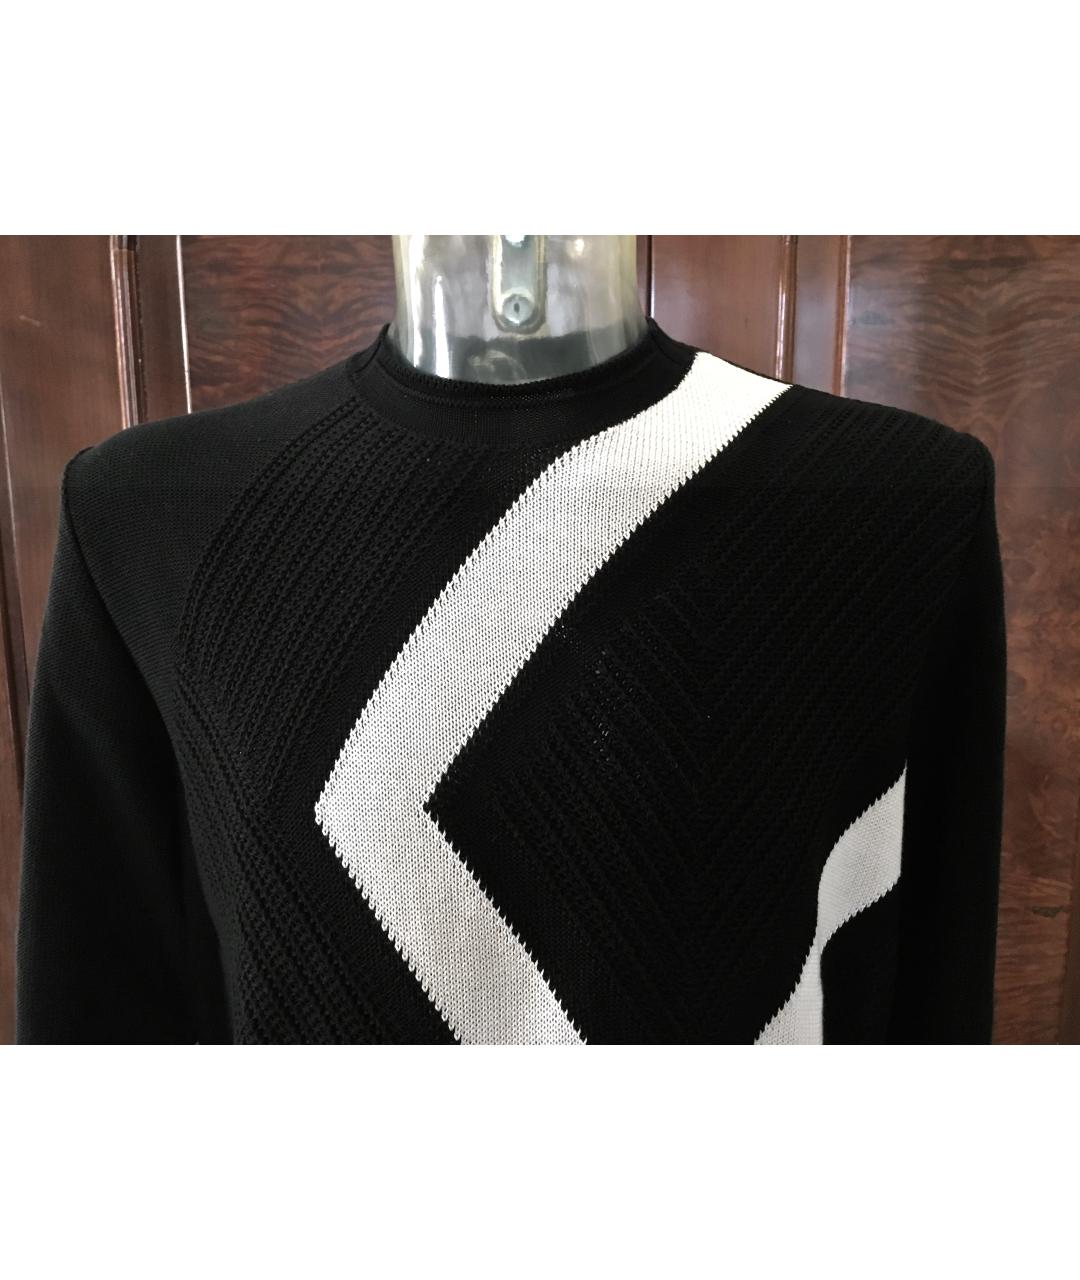 BILANCIONI Черный хлопковый джемпер / свитер, фото 5